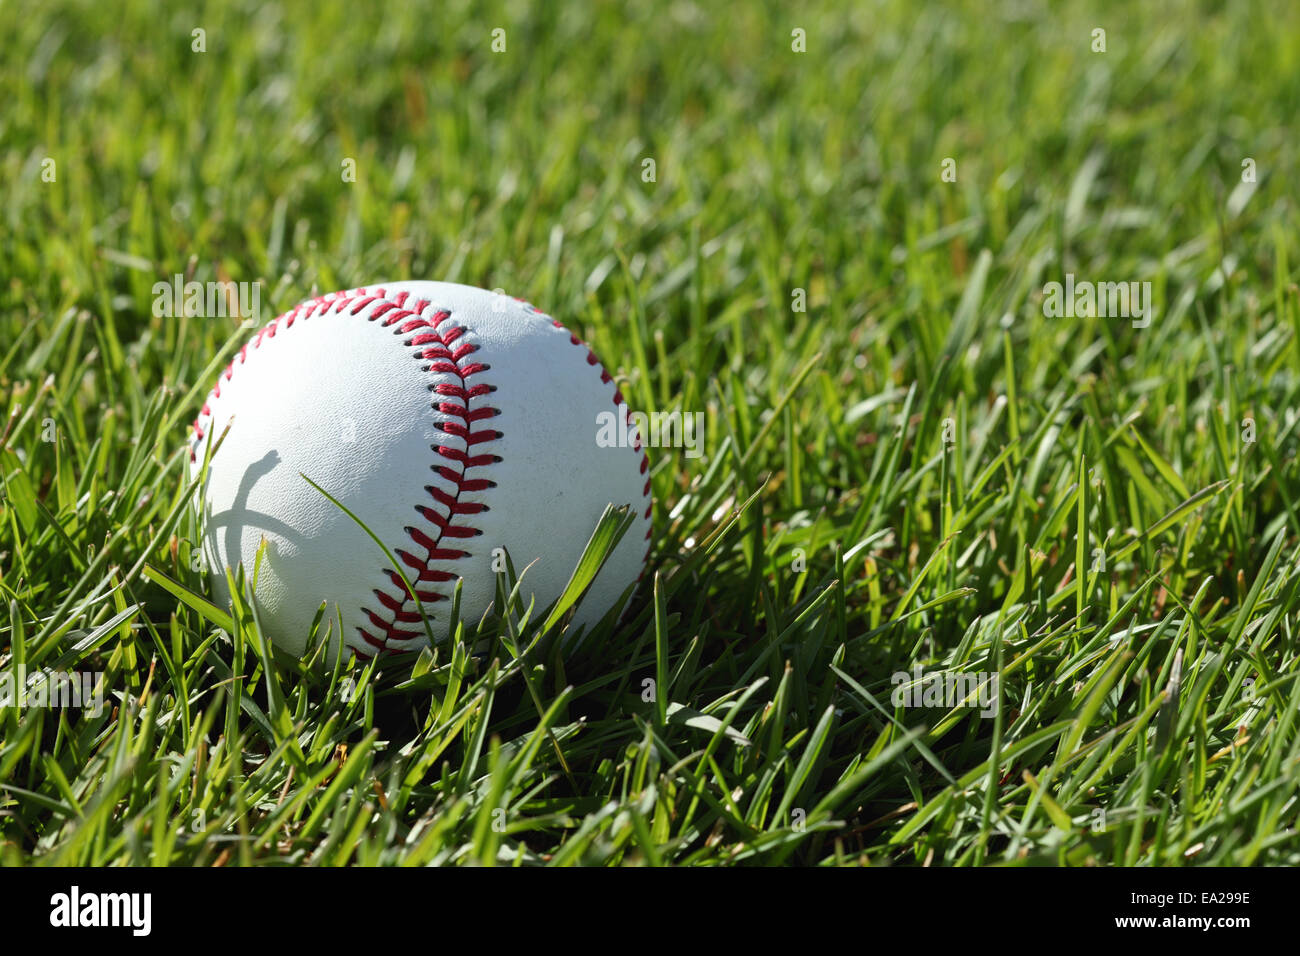 Una de las puntadas rojas en una pelota de béisbol, tendido en el pasto verde Foto de stock